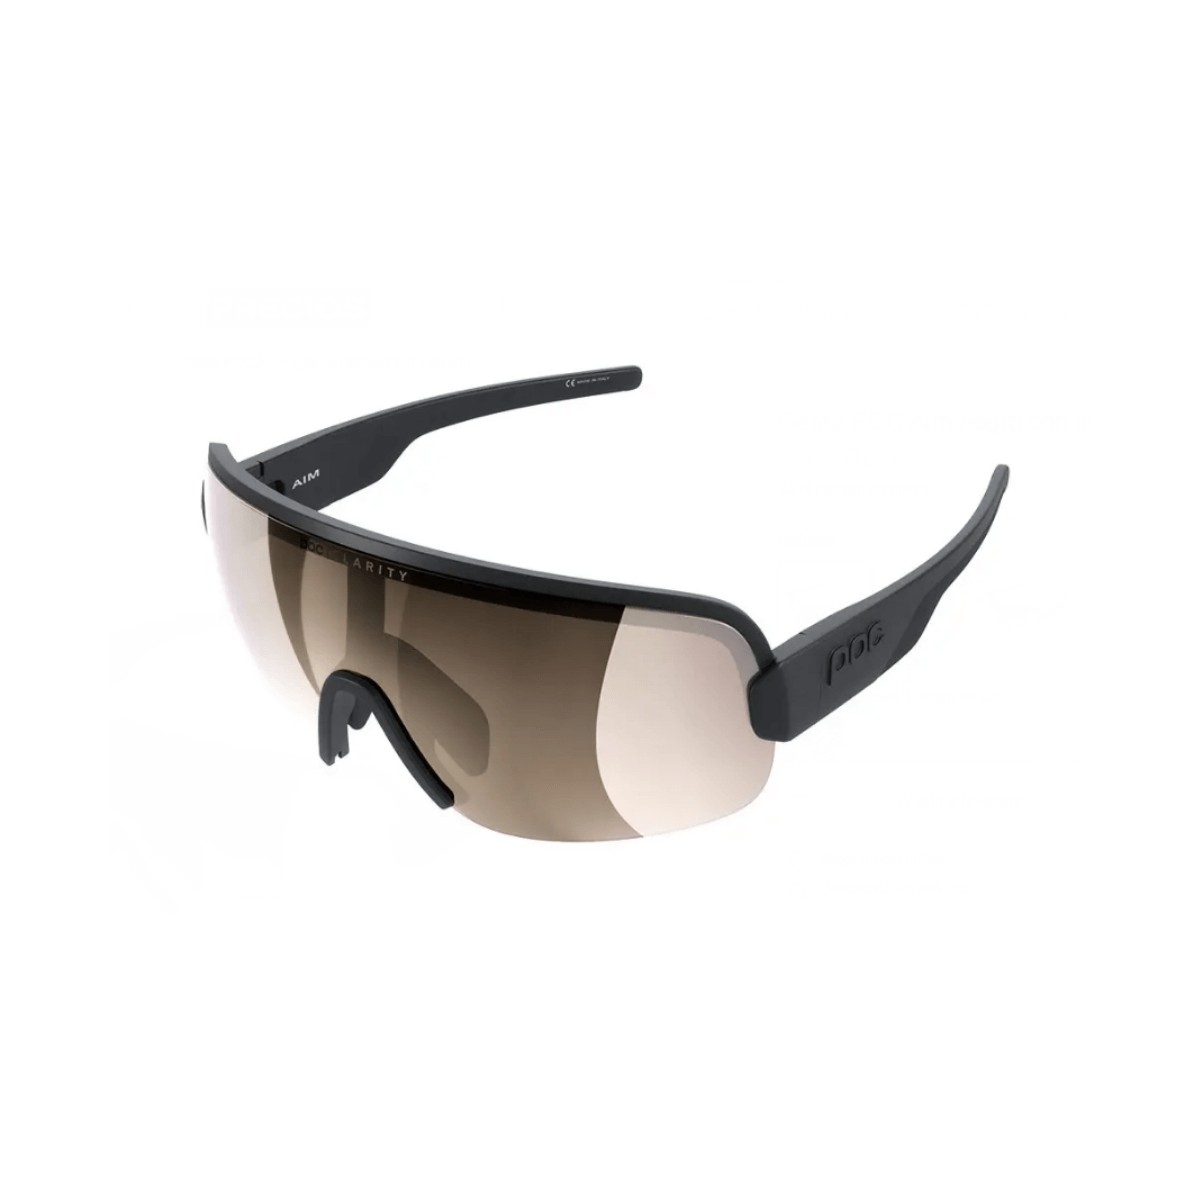 Image of POC Aim-Brille mit schwarzen und braunen Gläsern